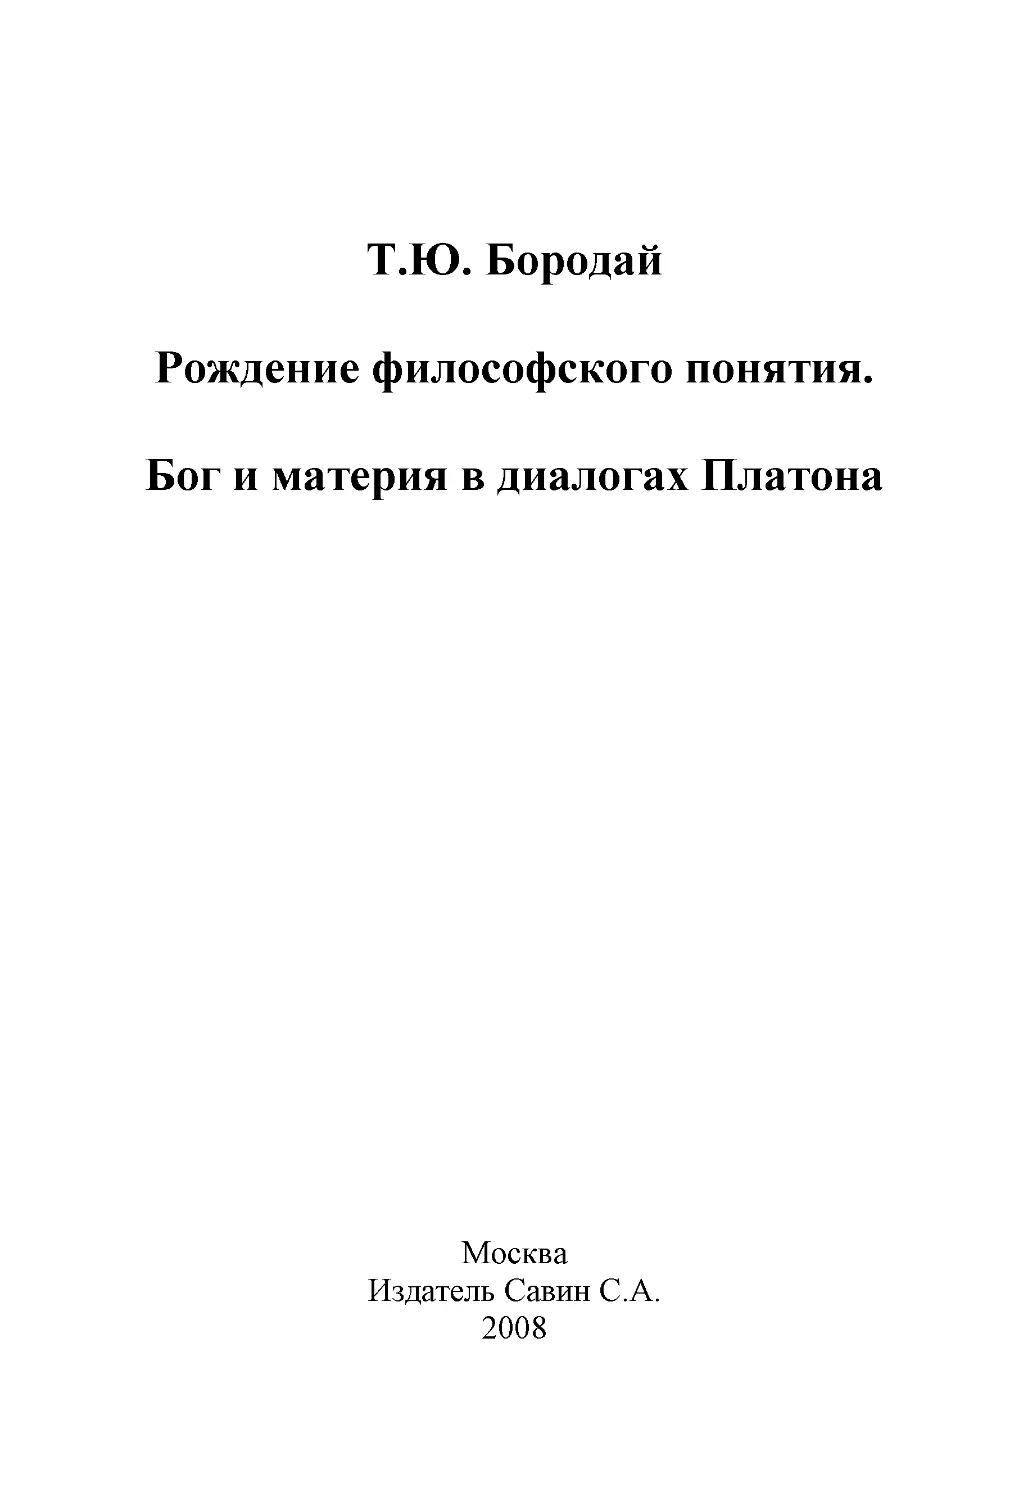 1-rojd_filos_ponyatiya-2008.pdf